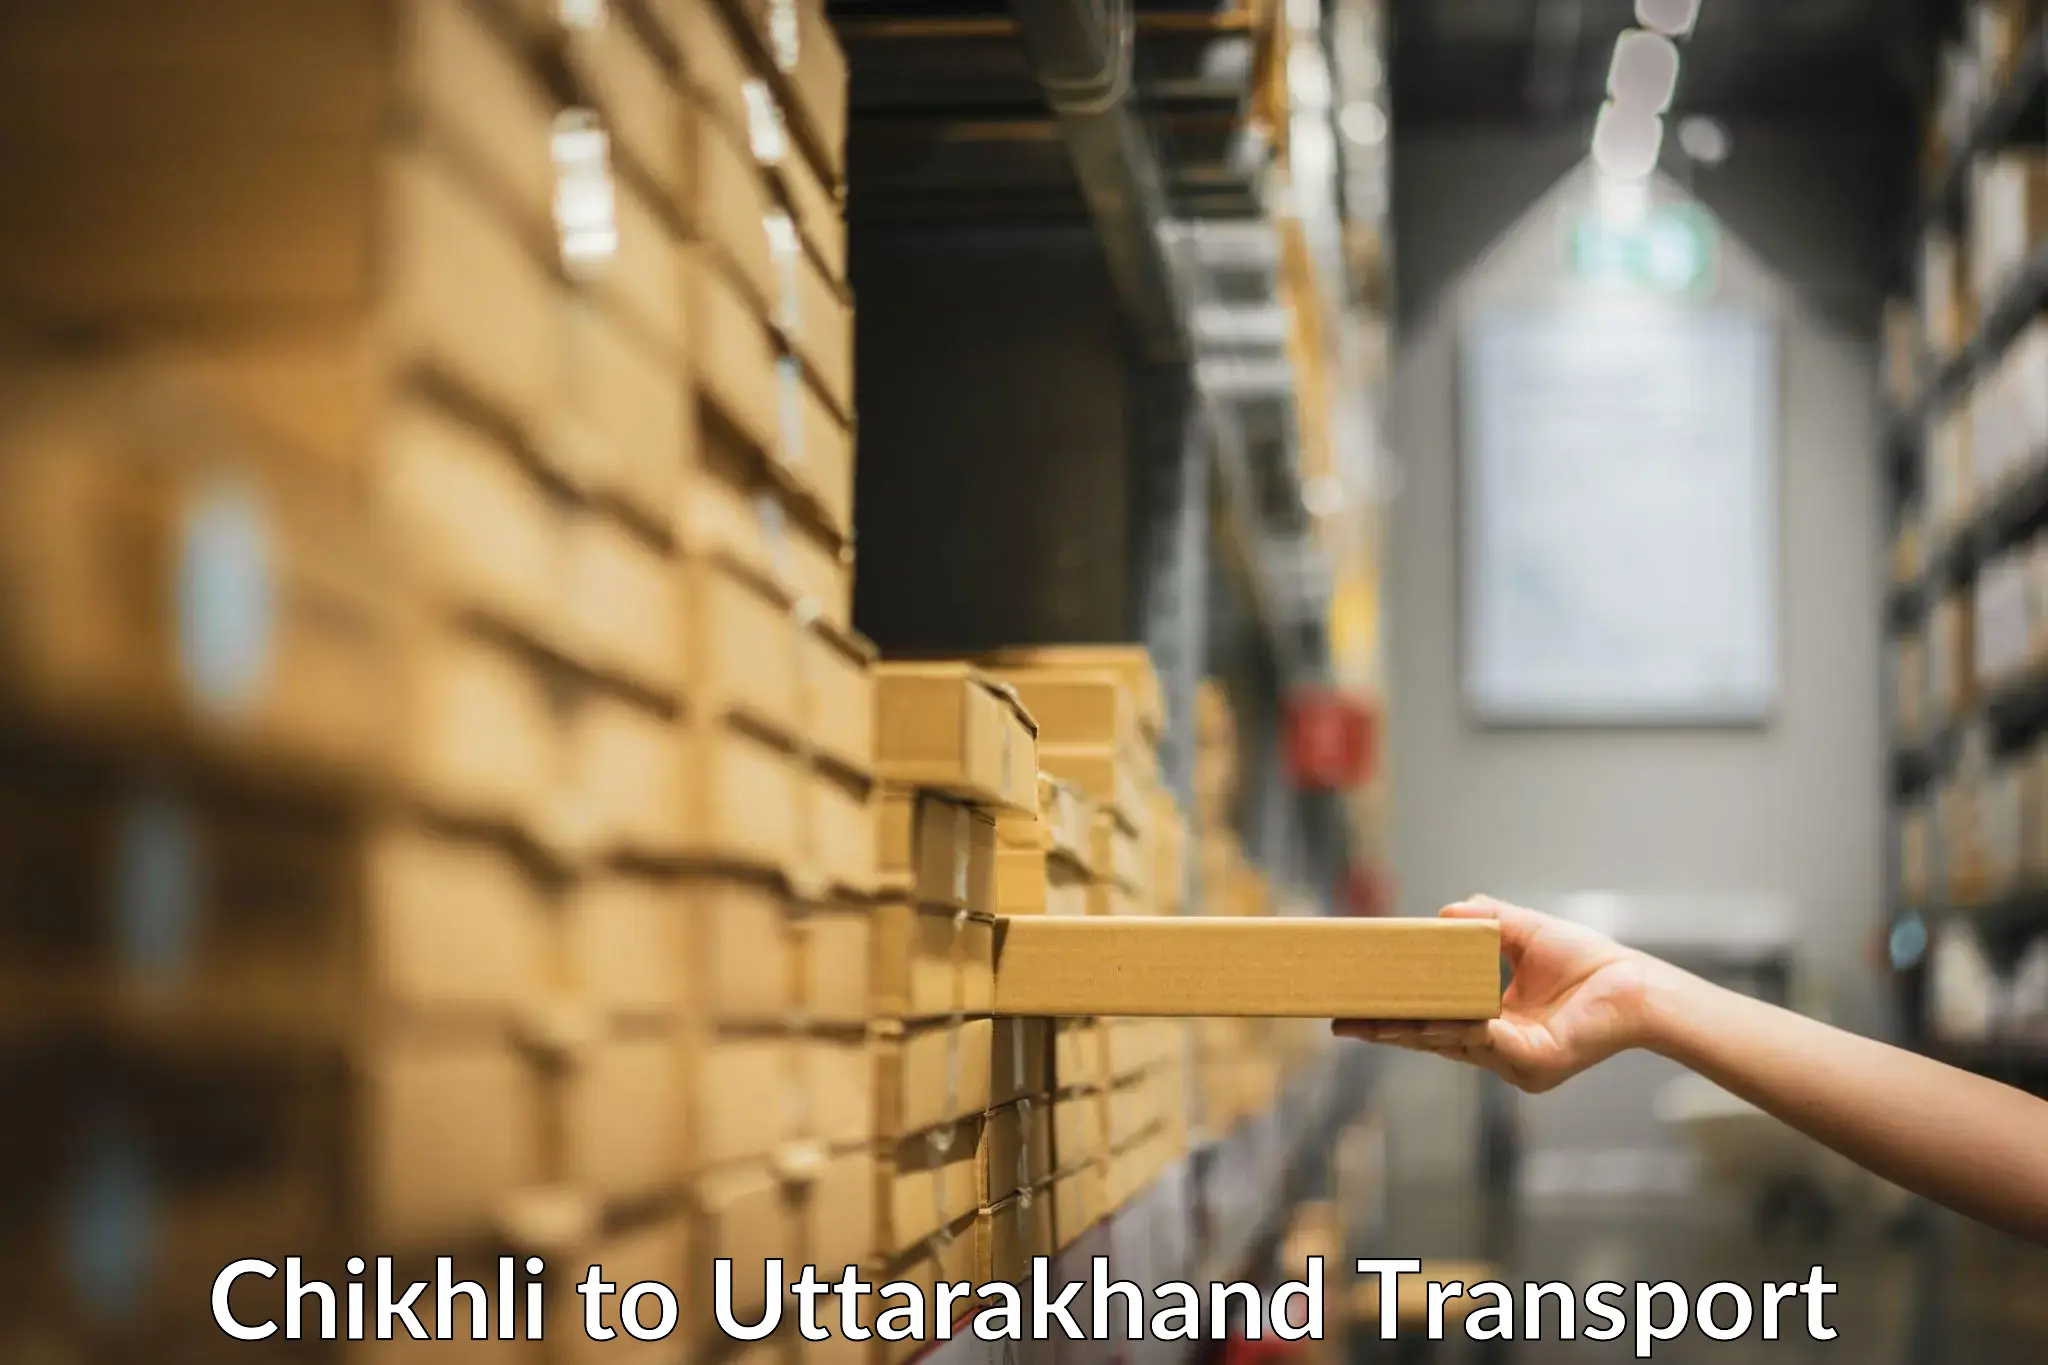 International cargo transportation services Chikhli to Uttarakhand